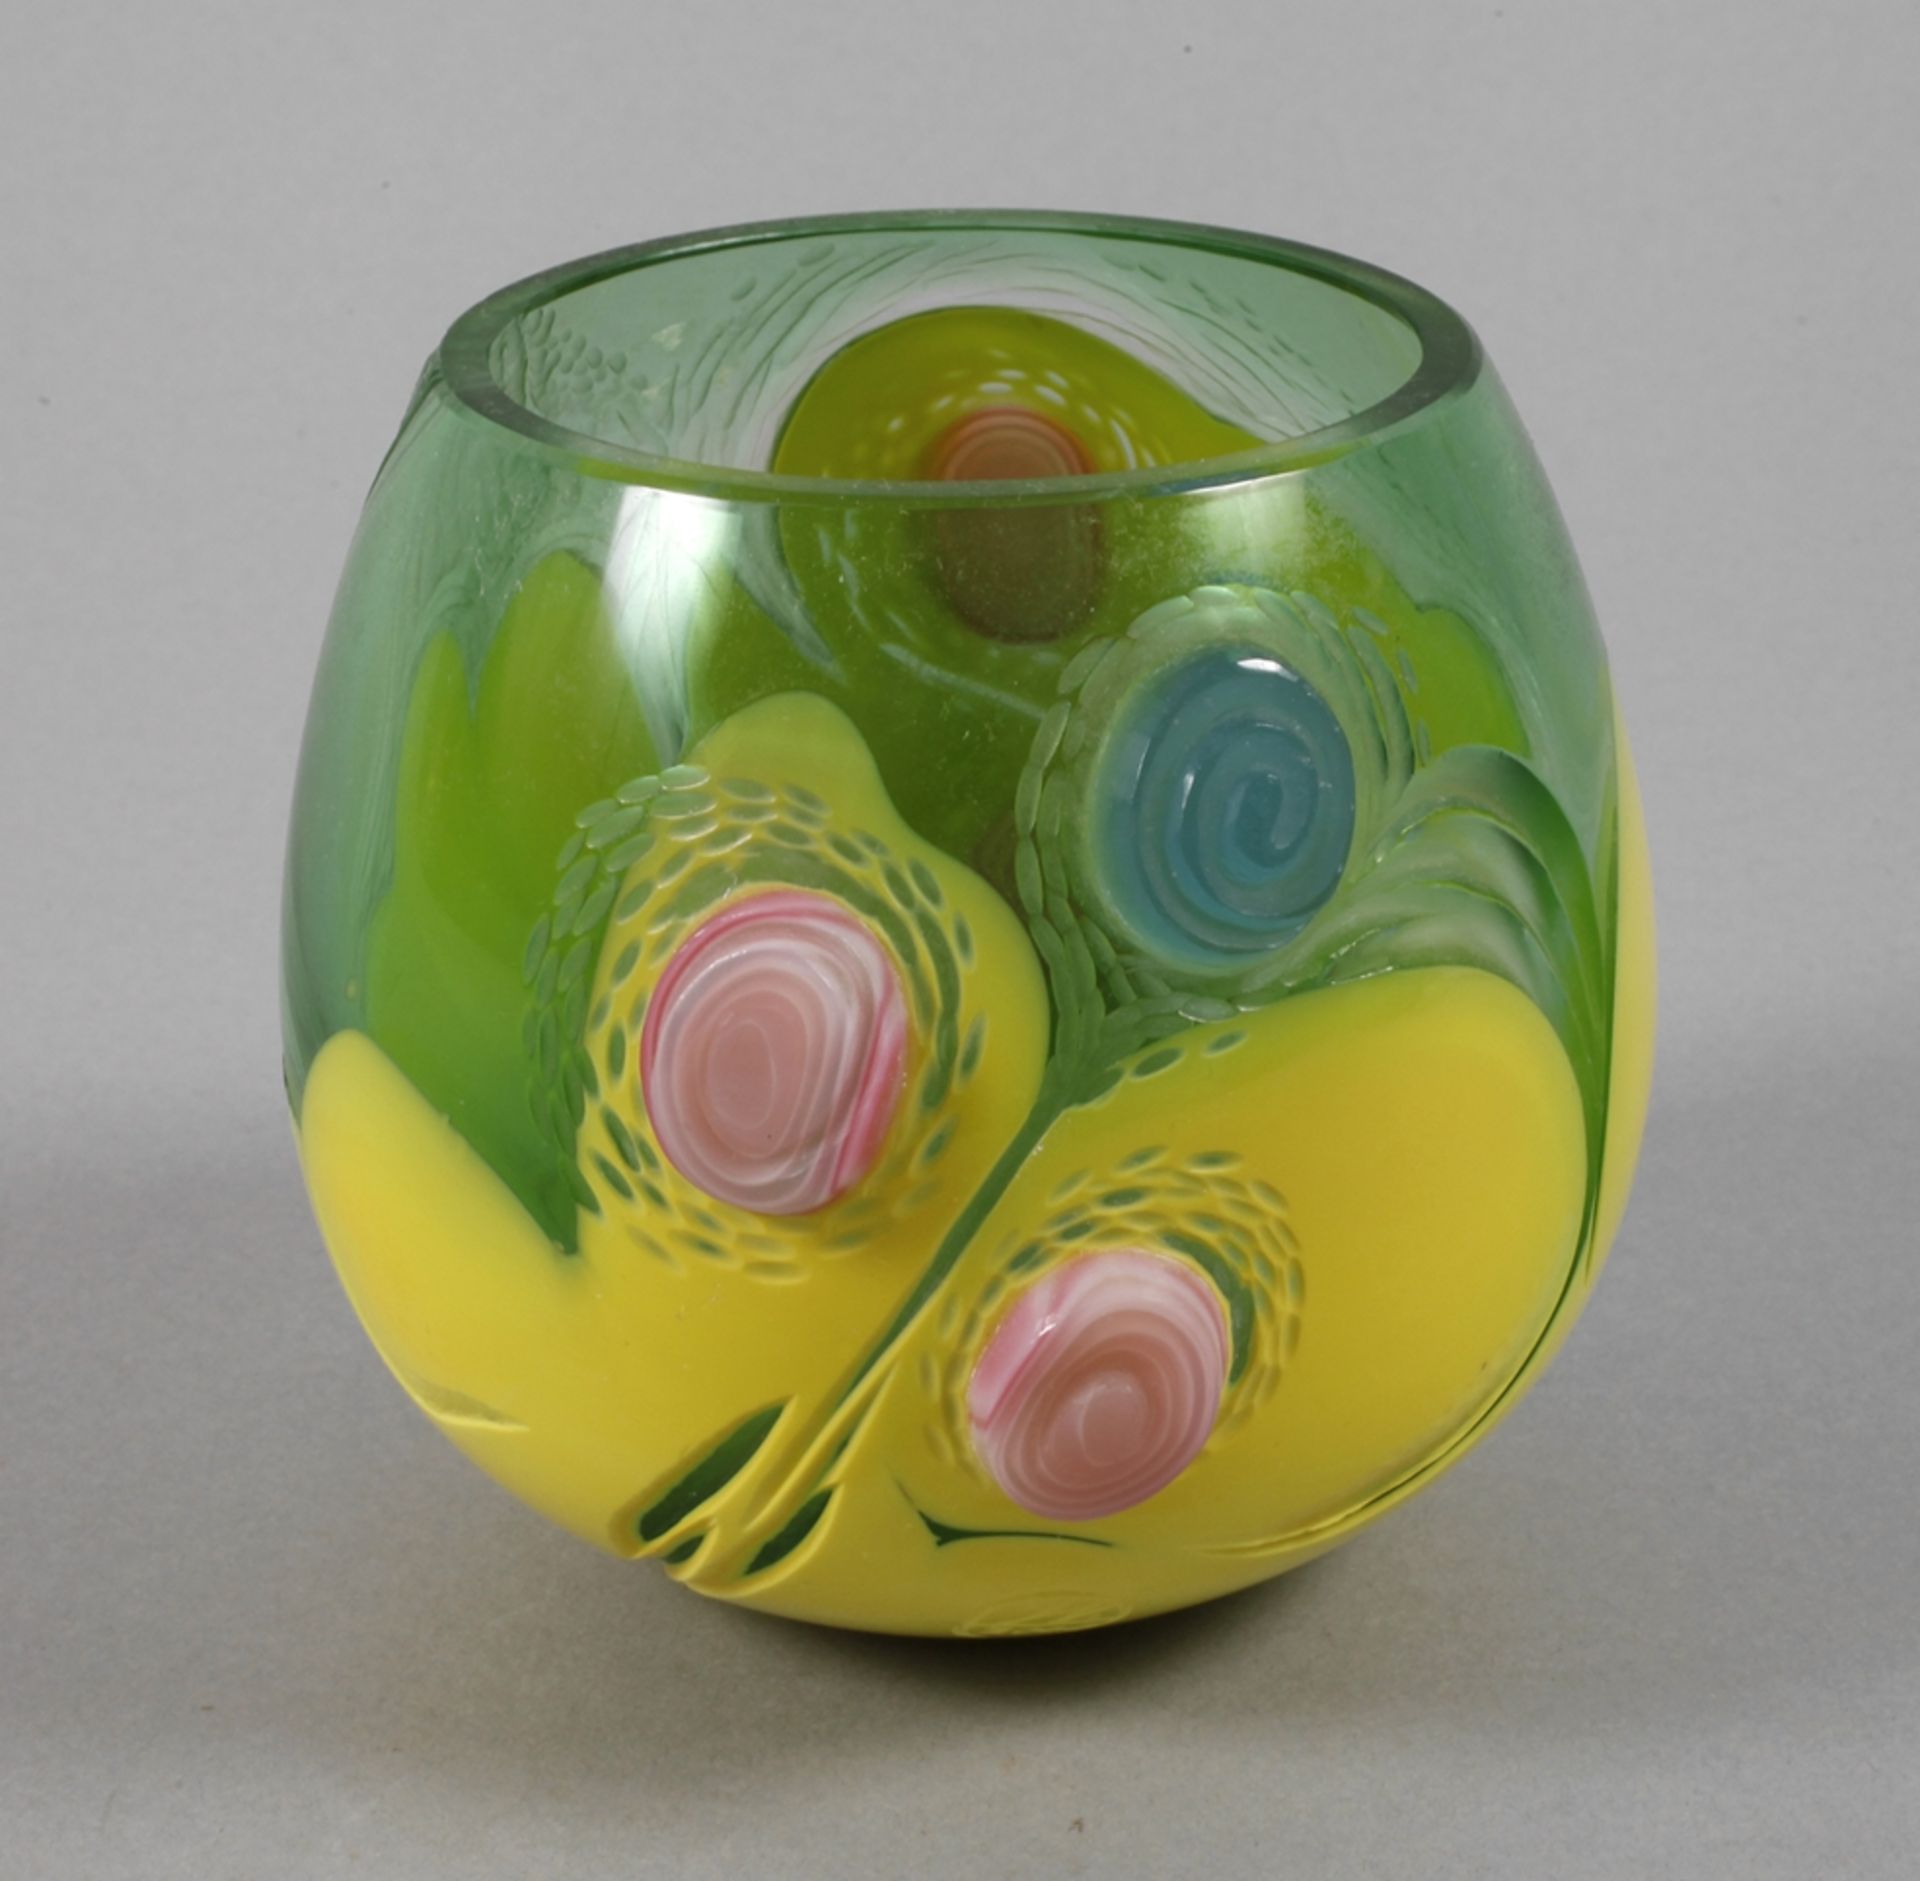 Vase Studioglasdatiert 2000, Herstellermonogramm JV., farbloses Glas, grün und gelb überfangen,